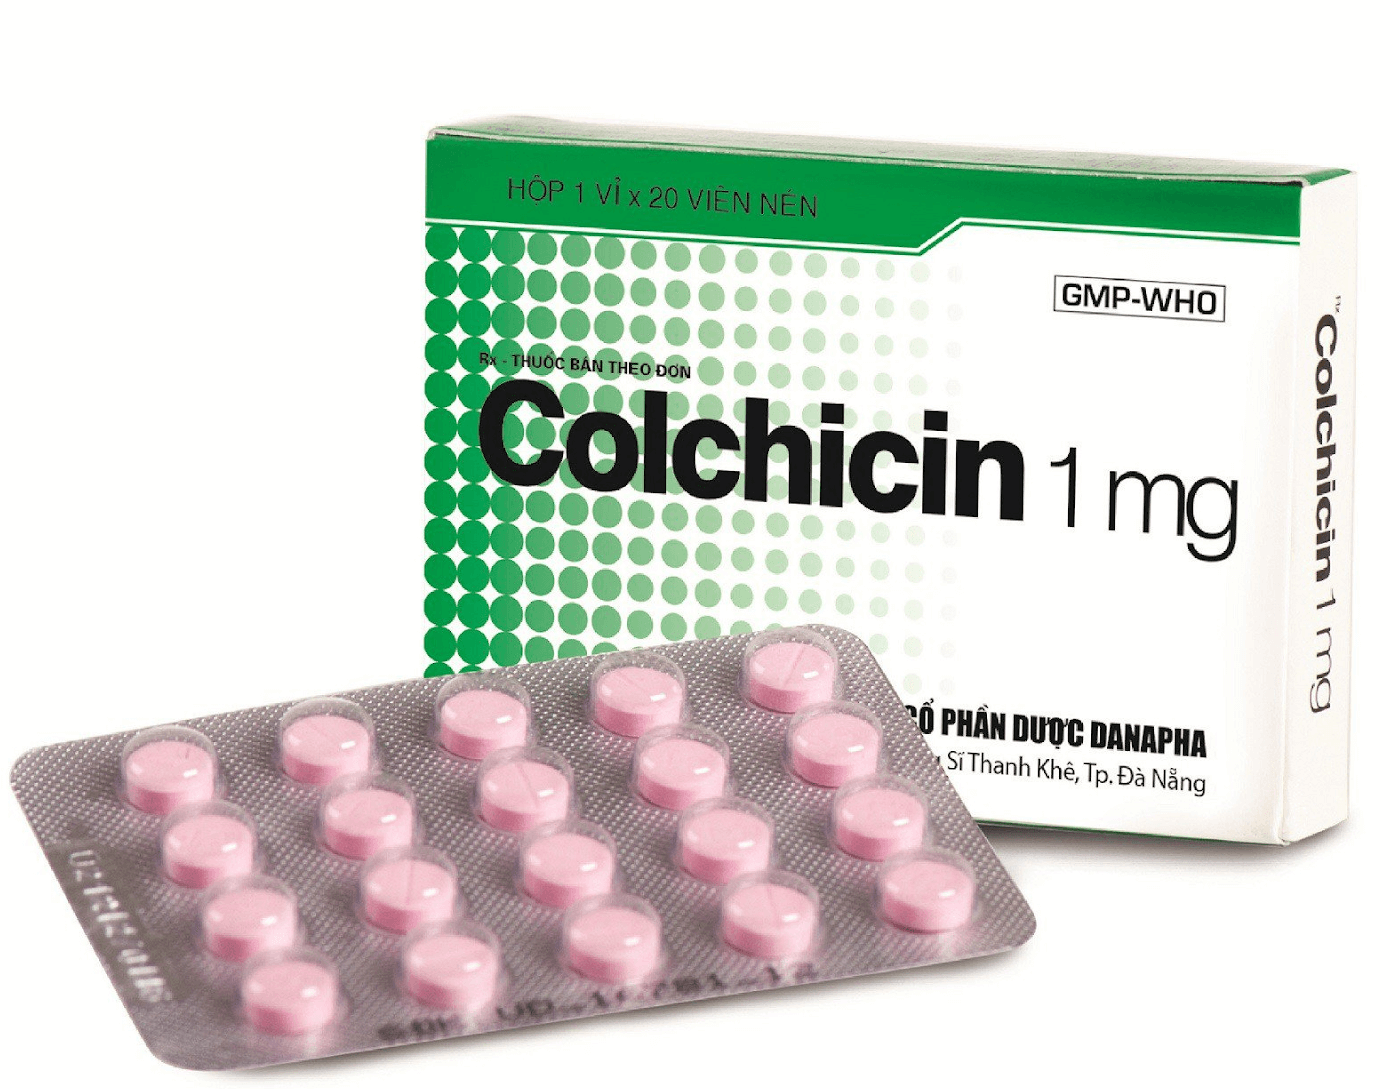 Thuốc Colchicin được sản xuất theo dạng viên nén 1mg